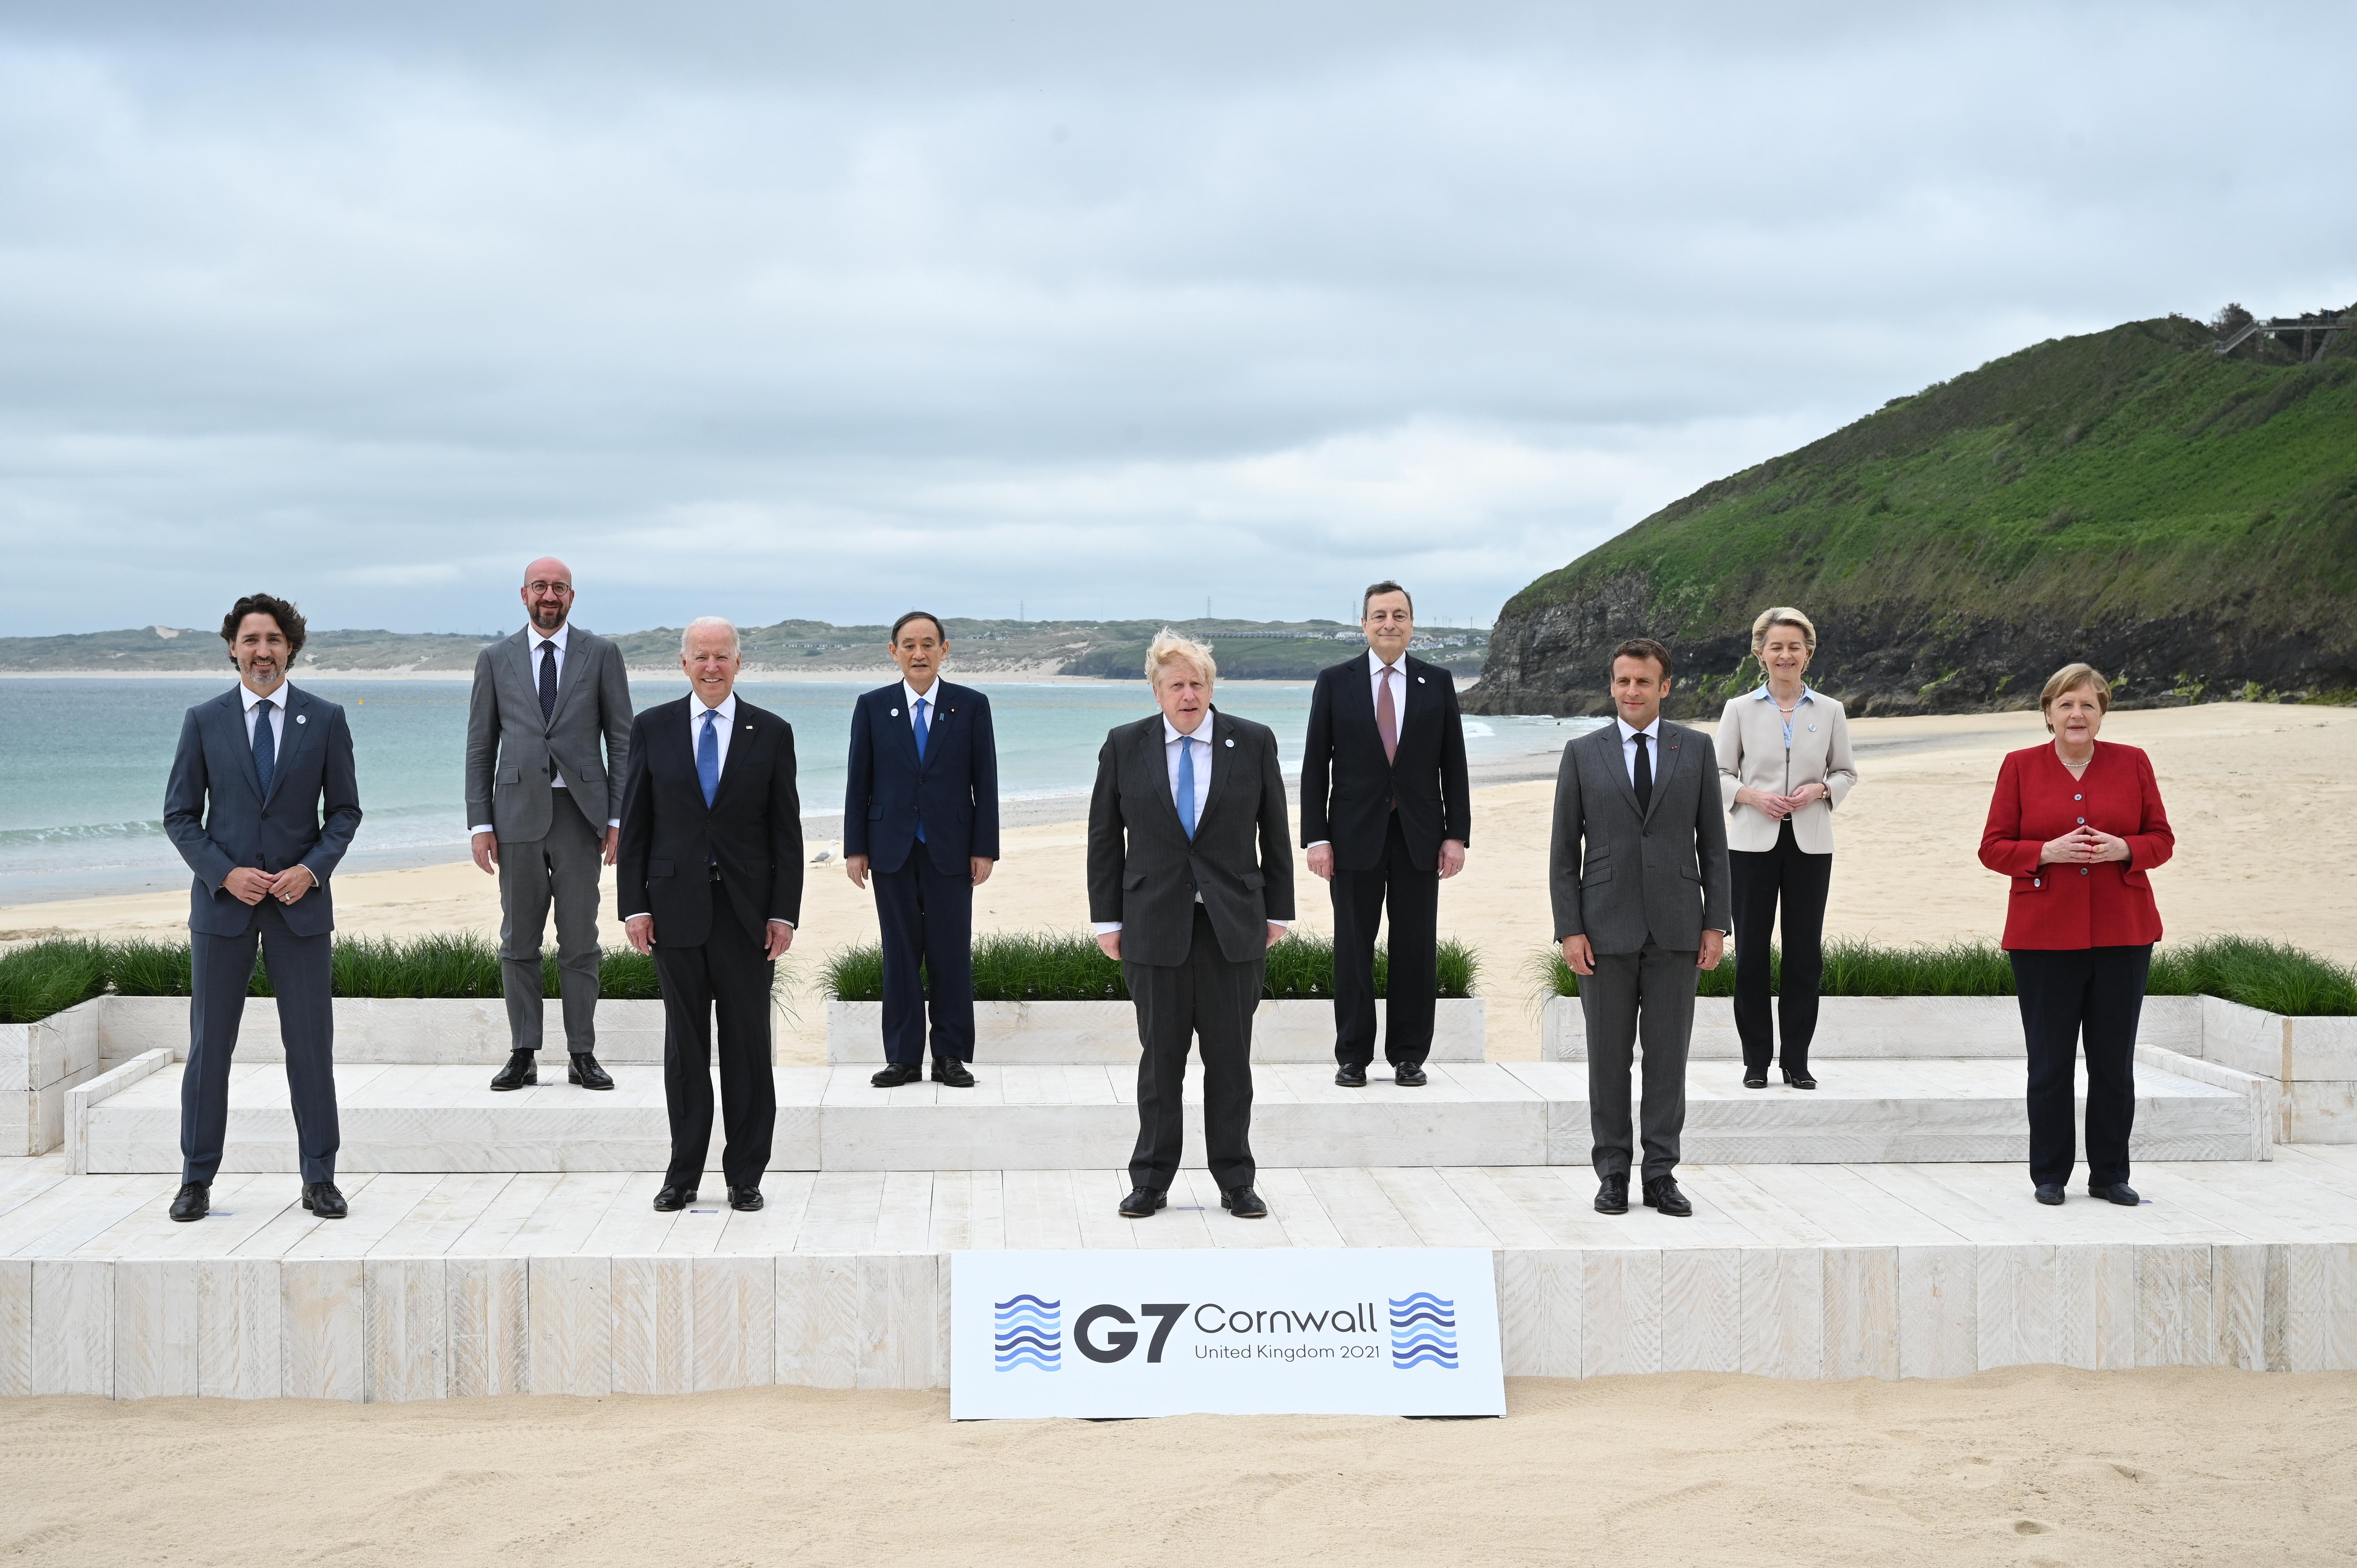 G7 Summit 2021 world leaders